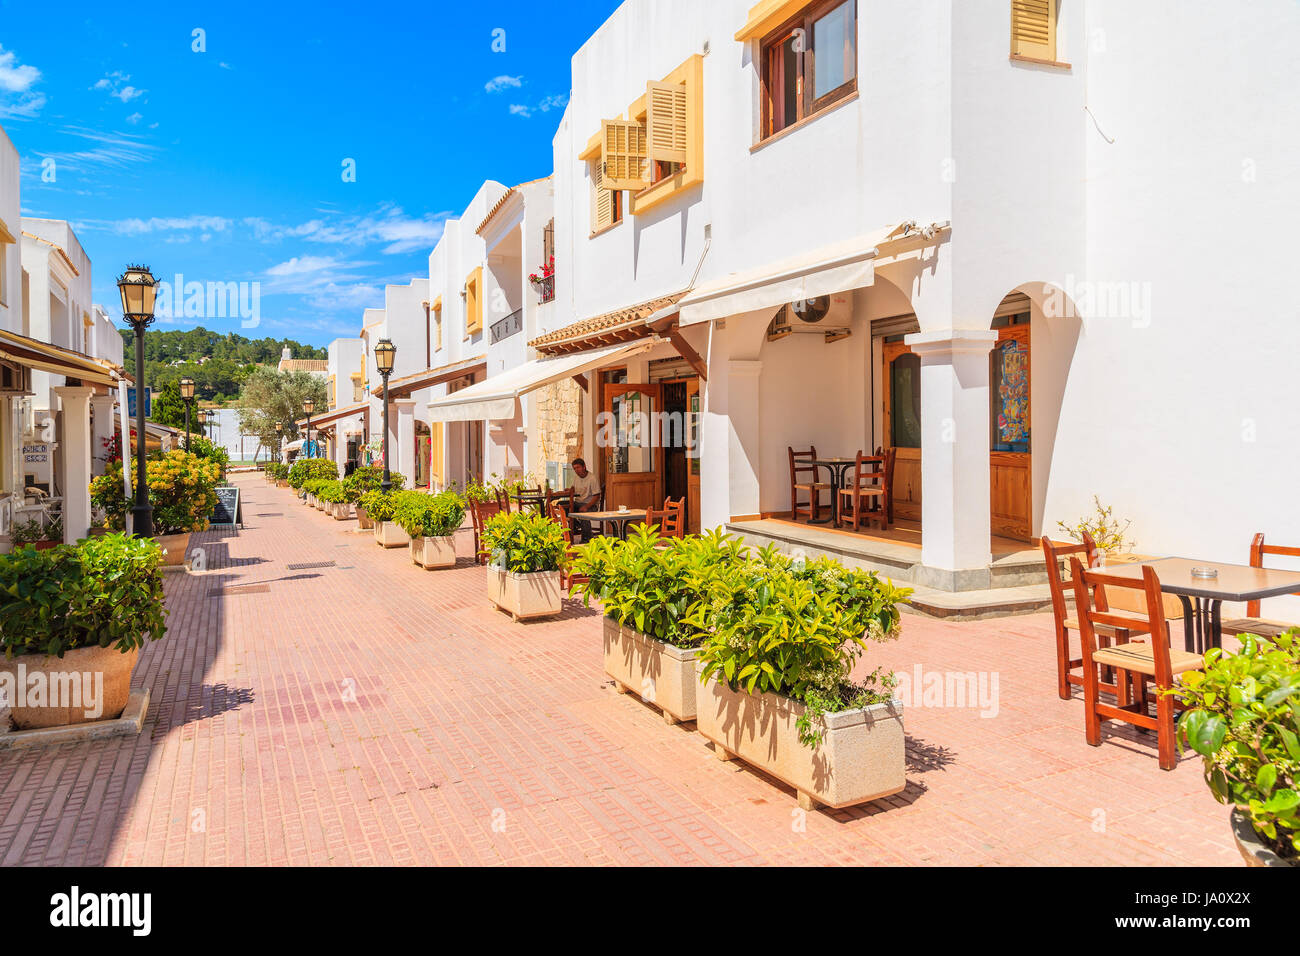 Insel IBIZA, Spanien - 18. Mai 2017: Straße mit typischen Architektur von Sant Carles de Peralta Dorf mit weiß getünchten Häusern, Insel Ibiza, Spanien. Stockfoto